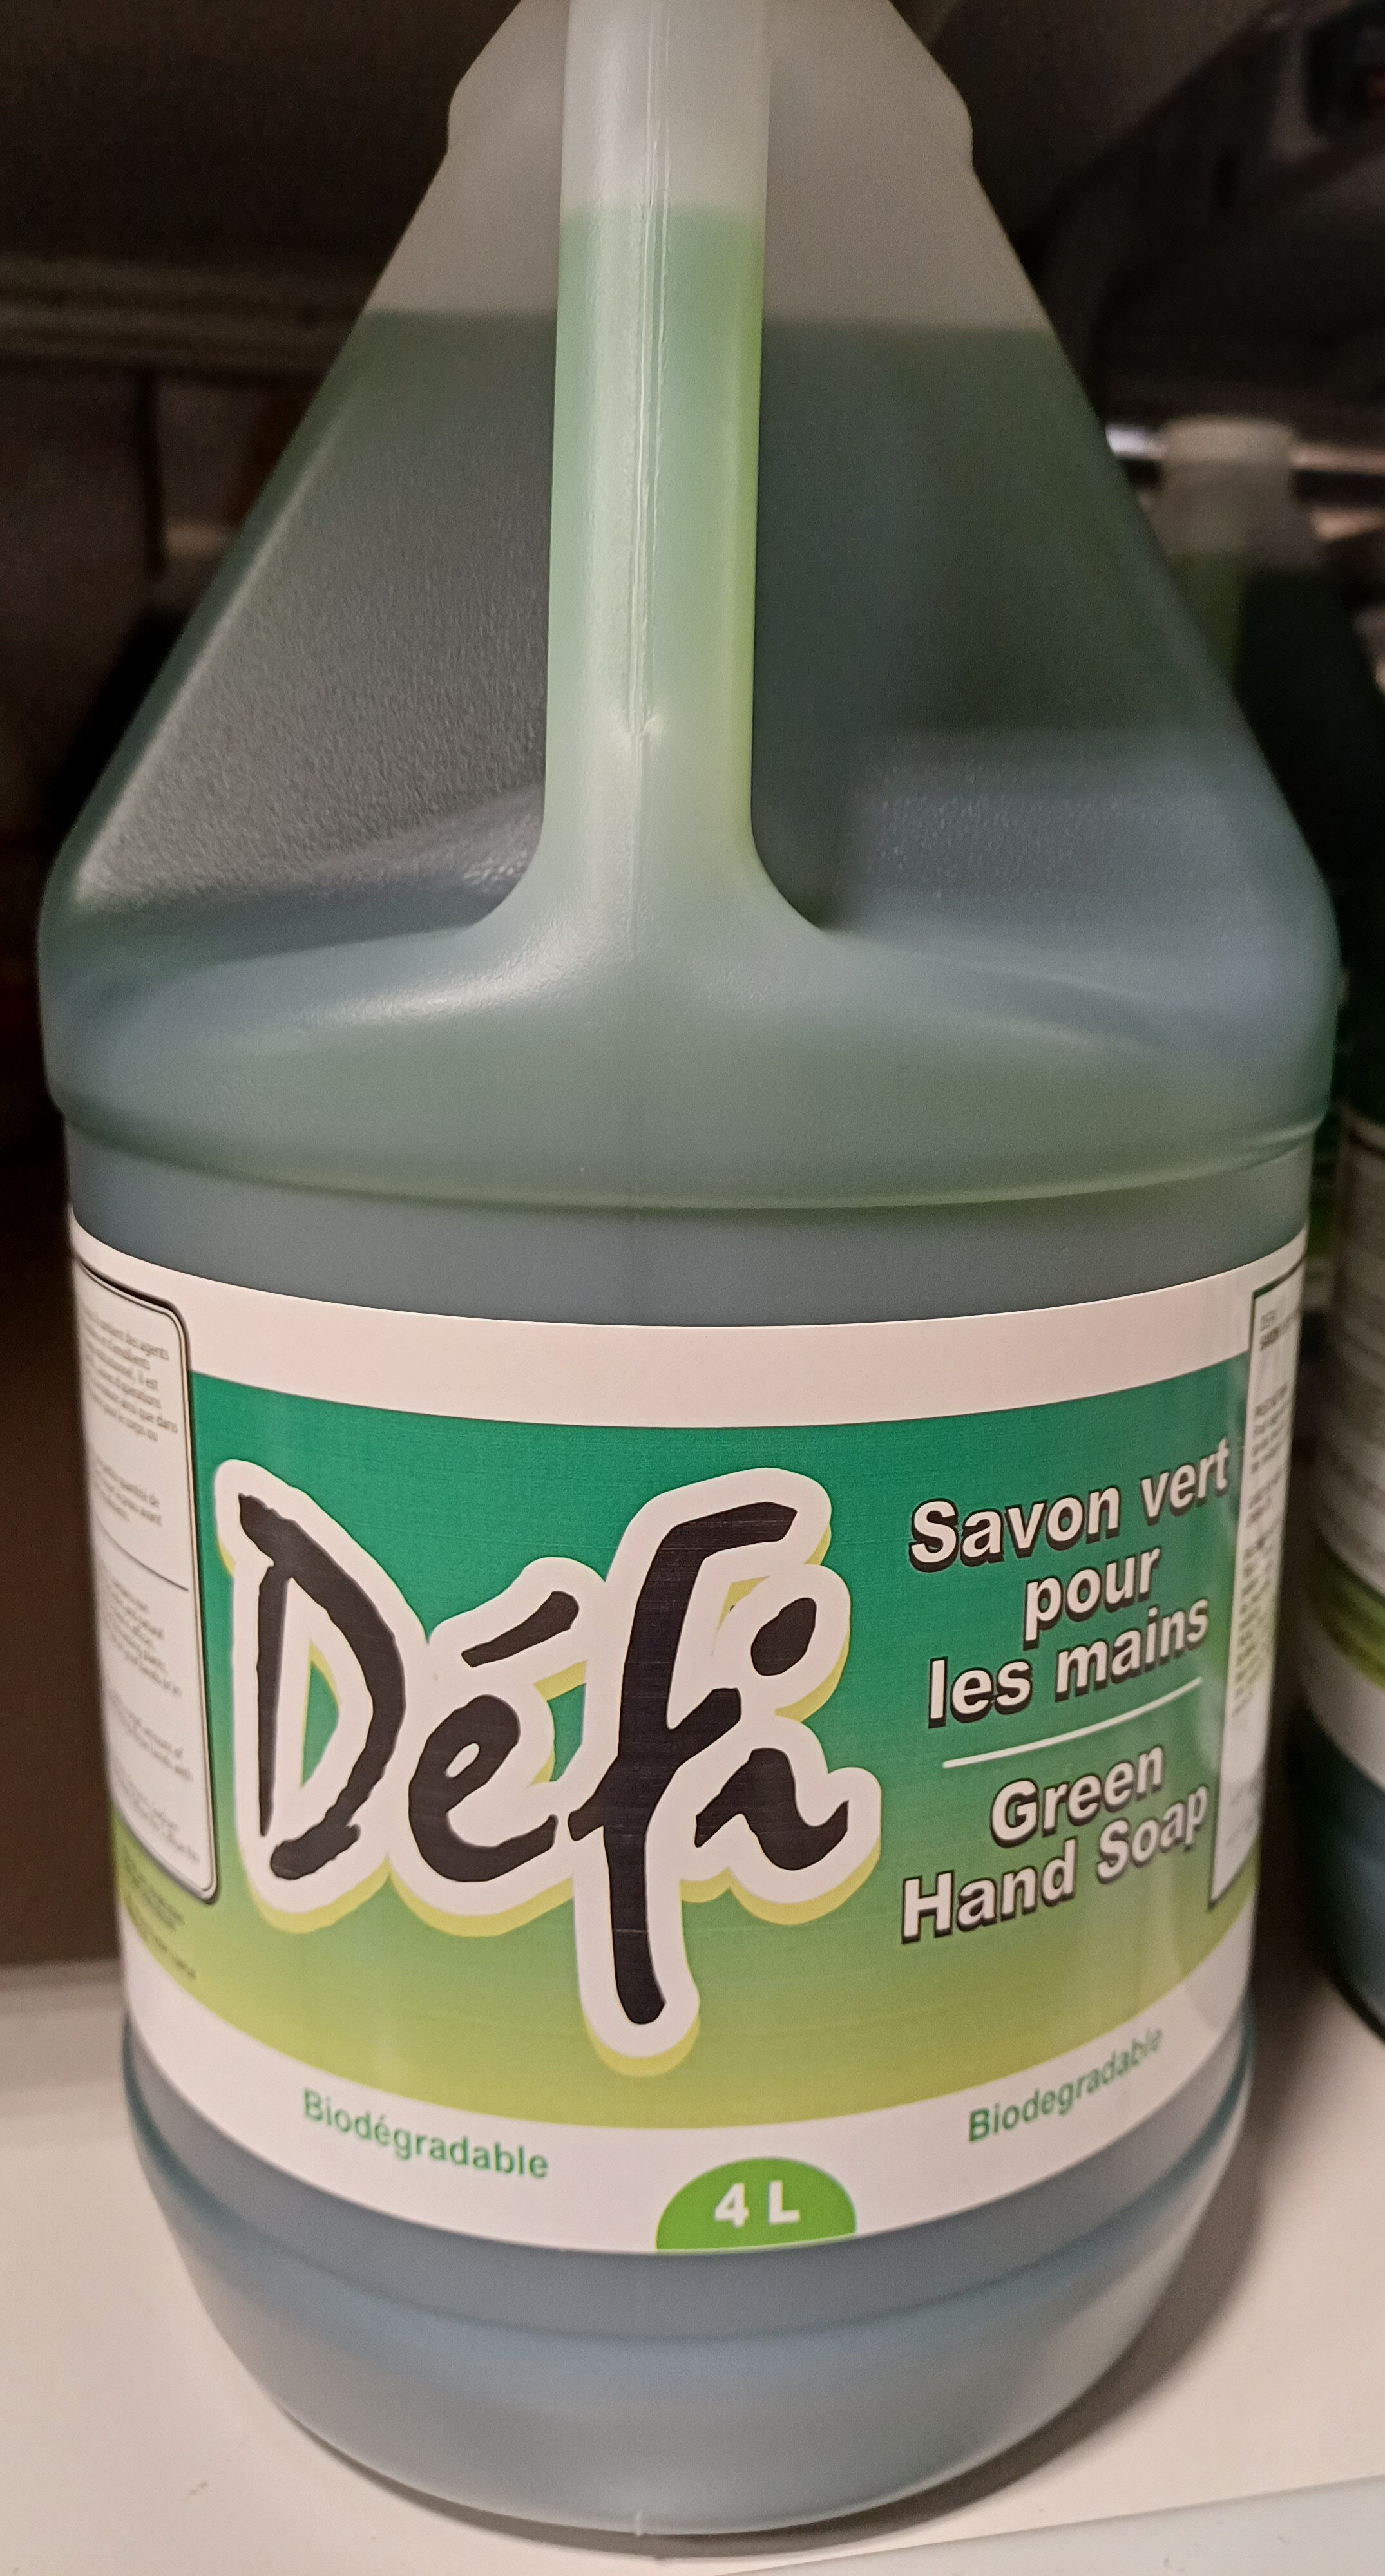 savon vert pour les mains - Produto - fr